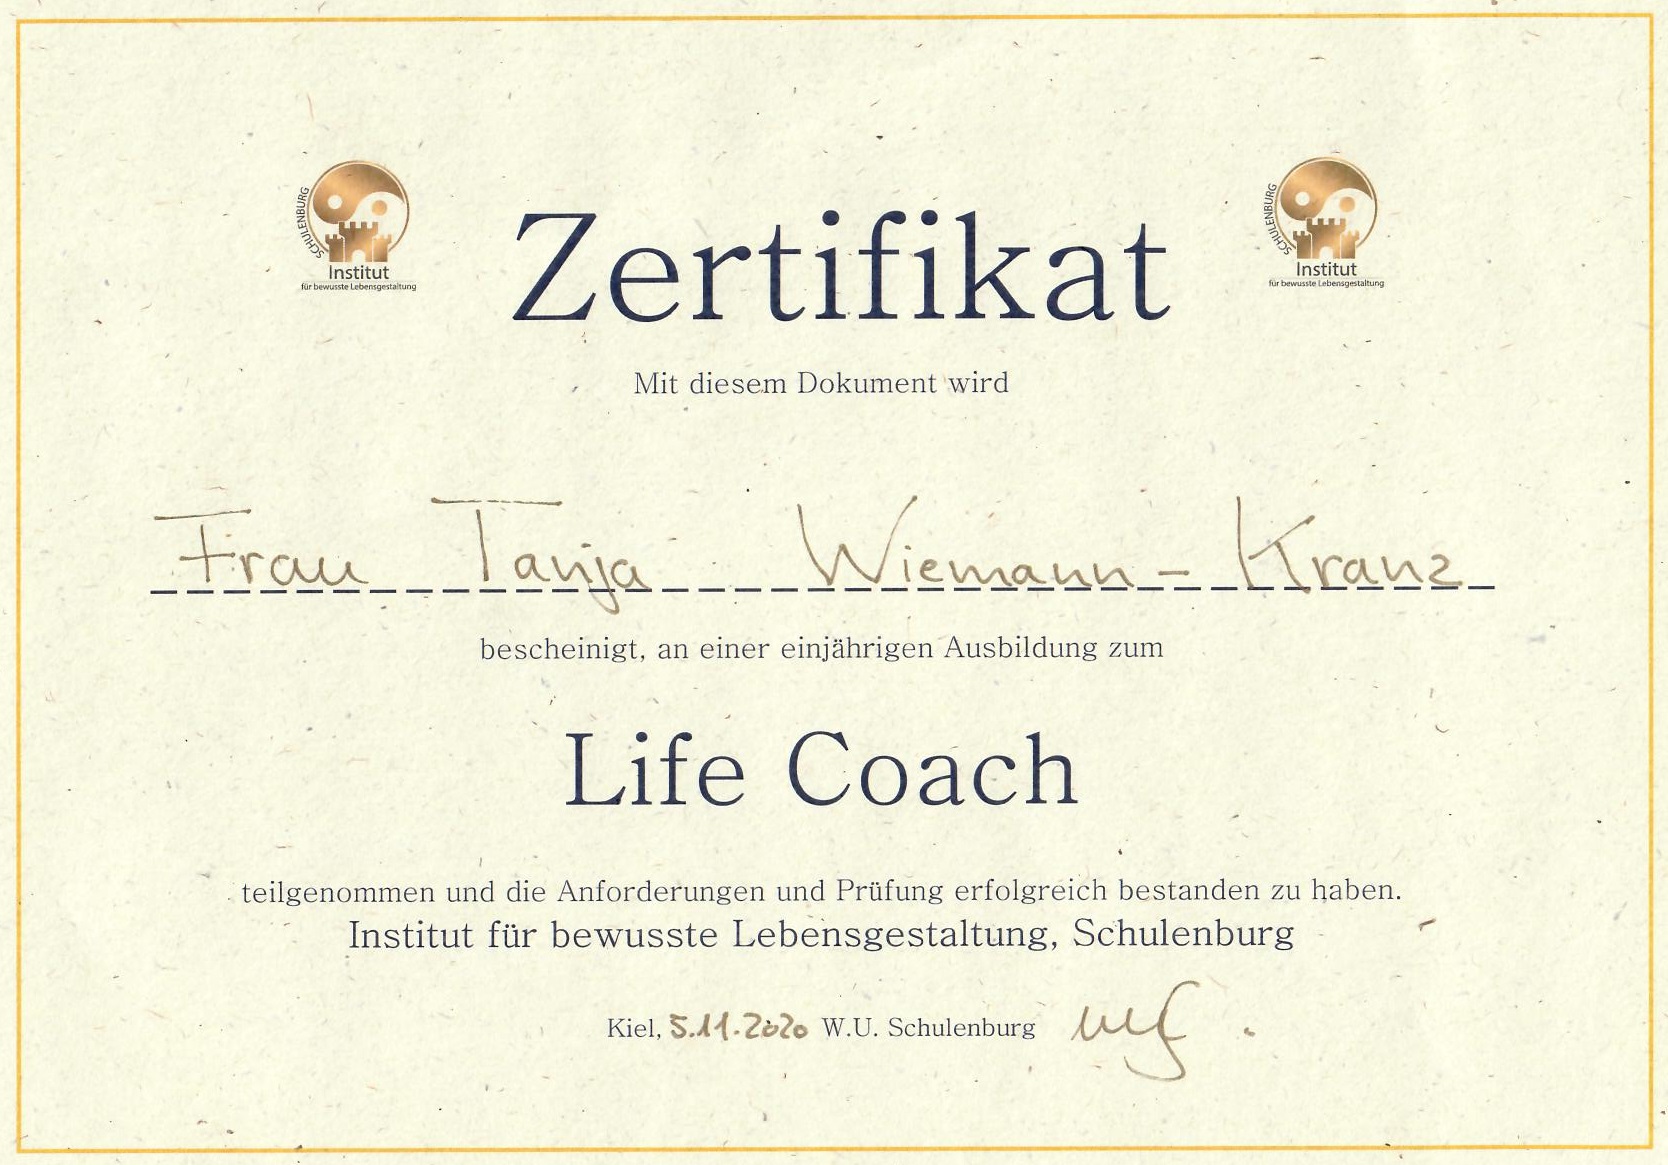 Hier sollten Sie eine Abbildung des Zertifikats über meine Ausbildung zum Life Coach sehen können.